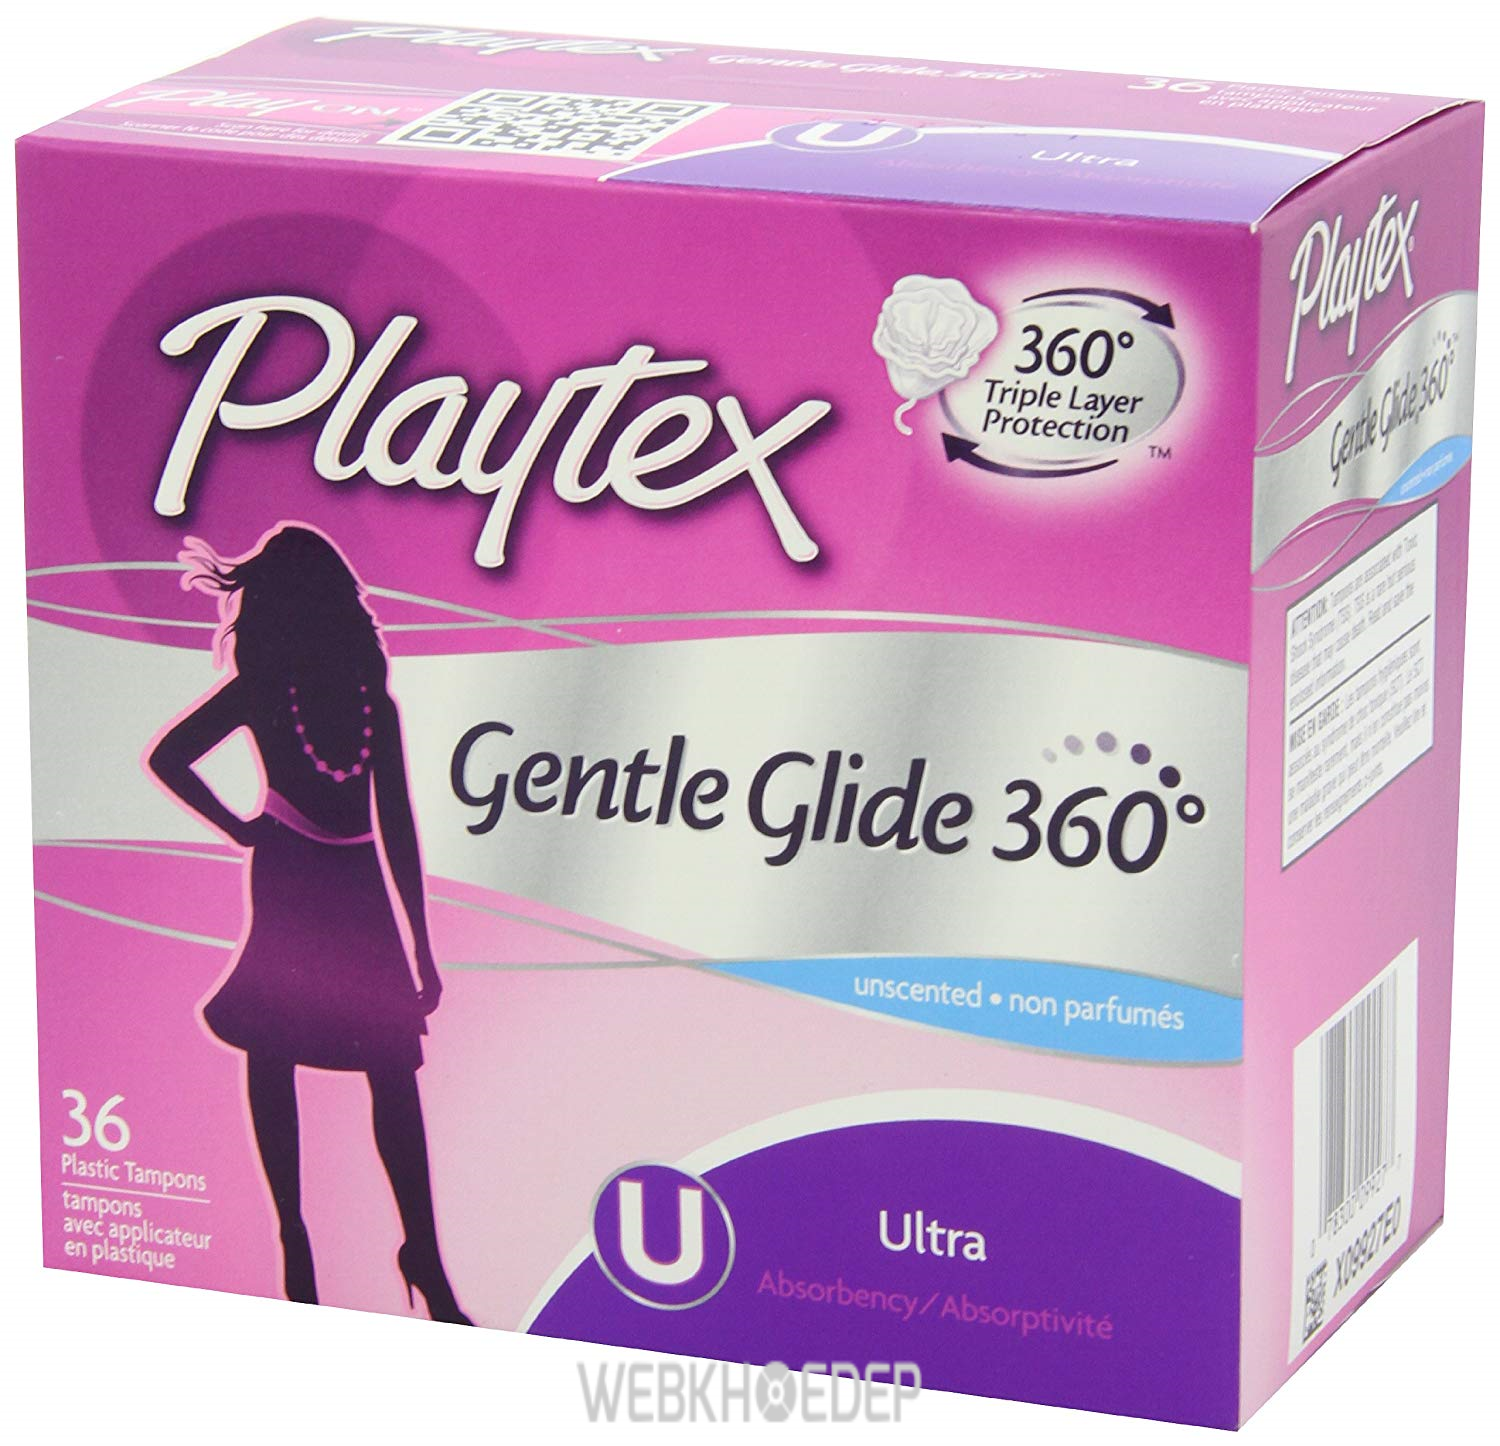 Tampon Playtex là loại băng vệ sinh dùng trong thể thao 